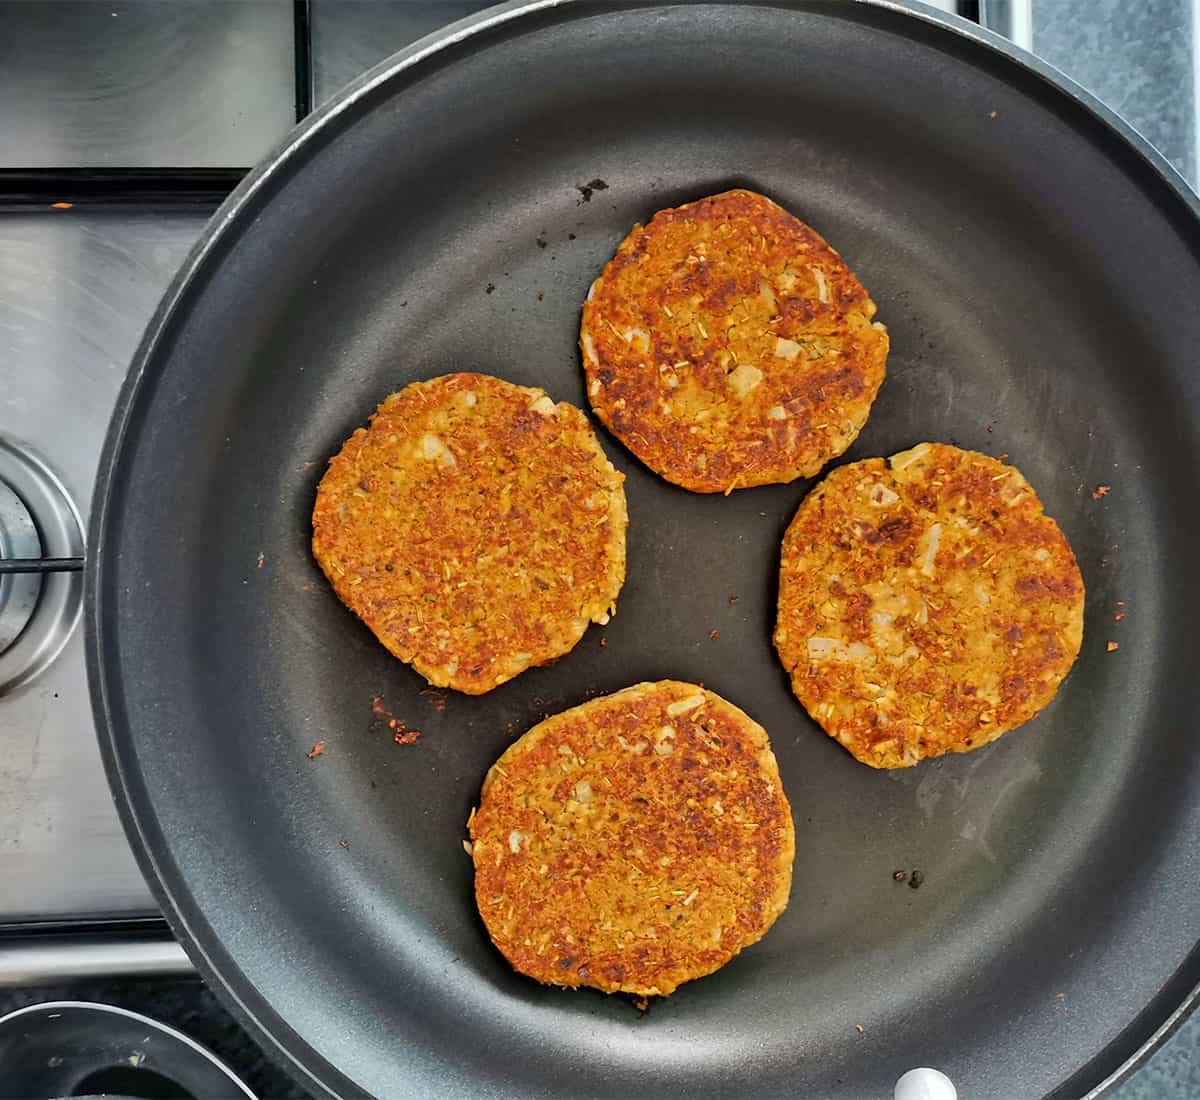 Tempeh vegan breakfast sausage patties are fried in a pan.